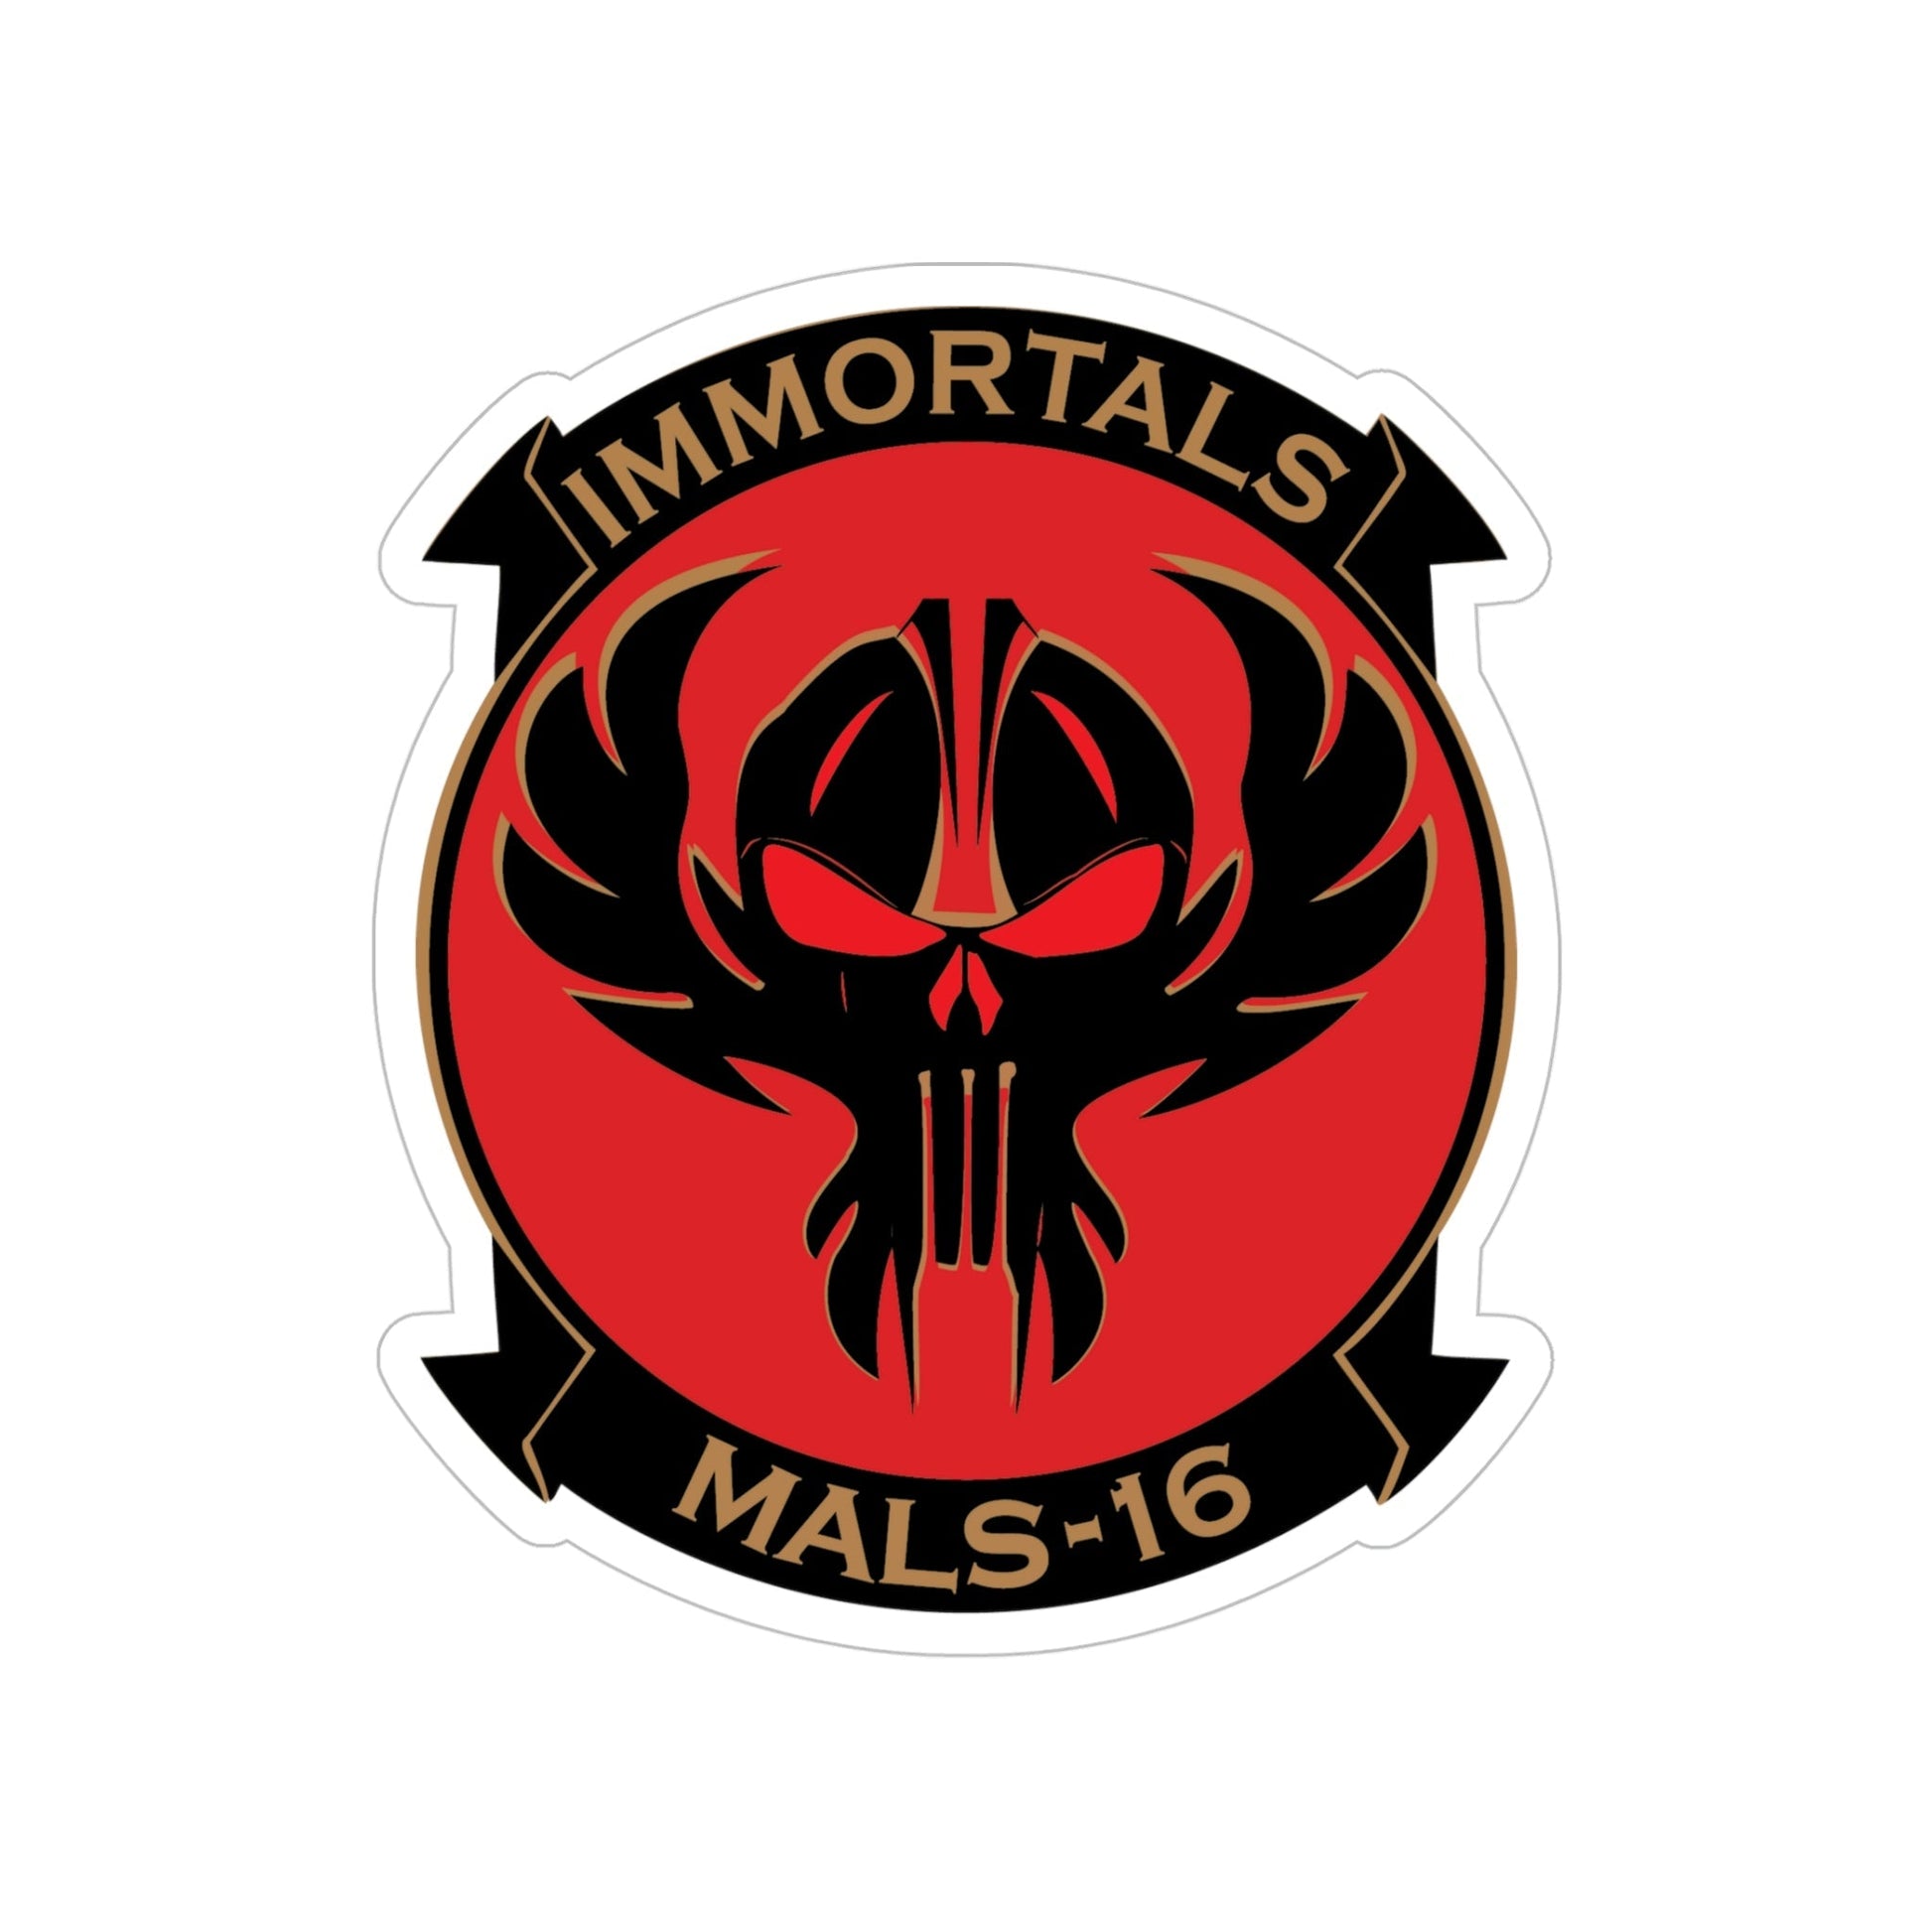 MALS 16 Immortals (USMC) Transparent STICKER Die-Cut Vinyl Decal-5 Inch-The Sticker Space